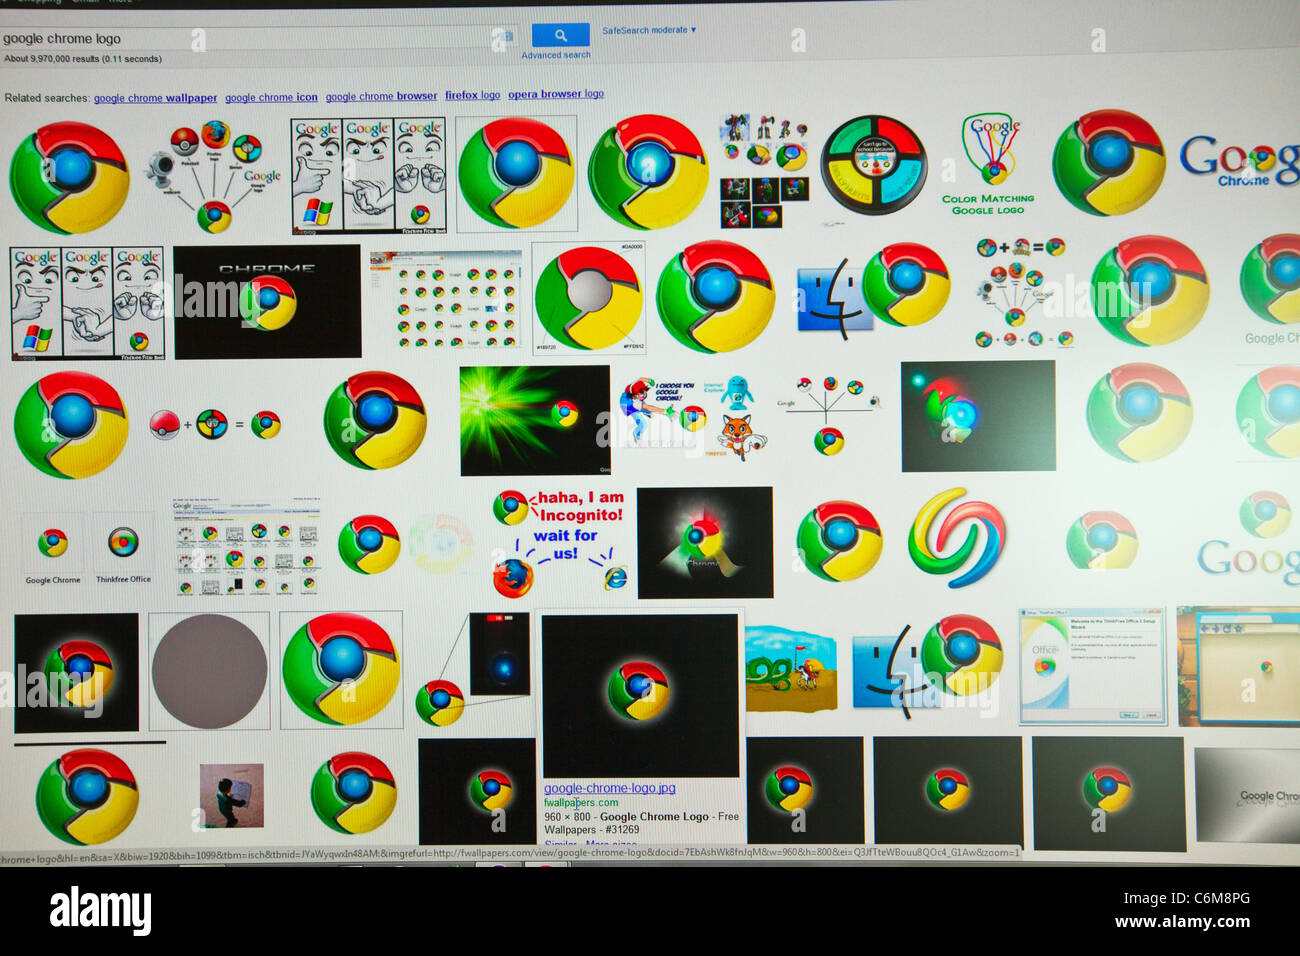 Google Chrome logo, logos, marques de sensation internet Moteur de recherche Banque D'Images